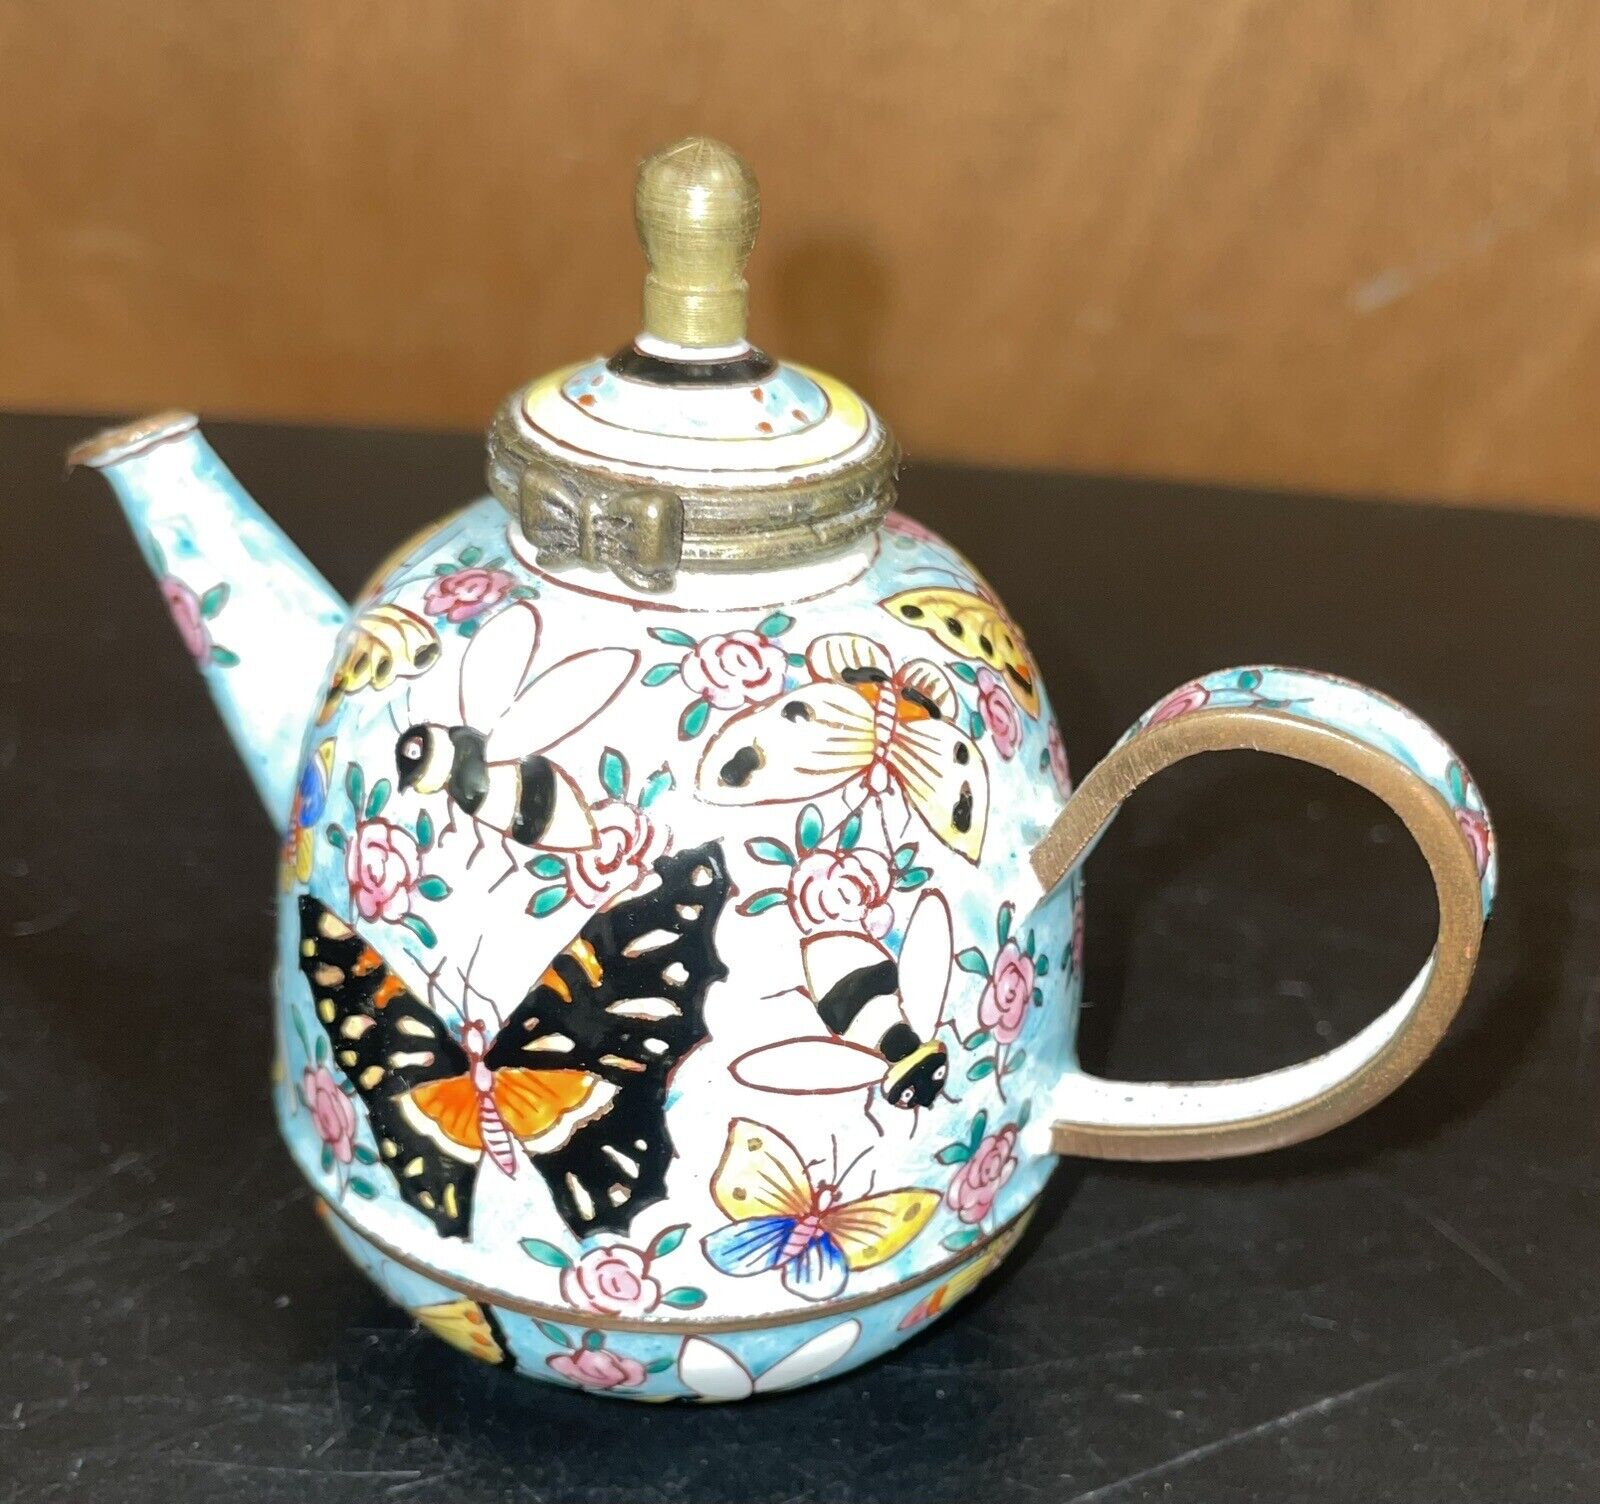 kelvin chen miniature enamel teapot 1999 Butterfly Design